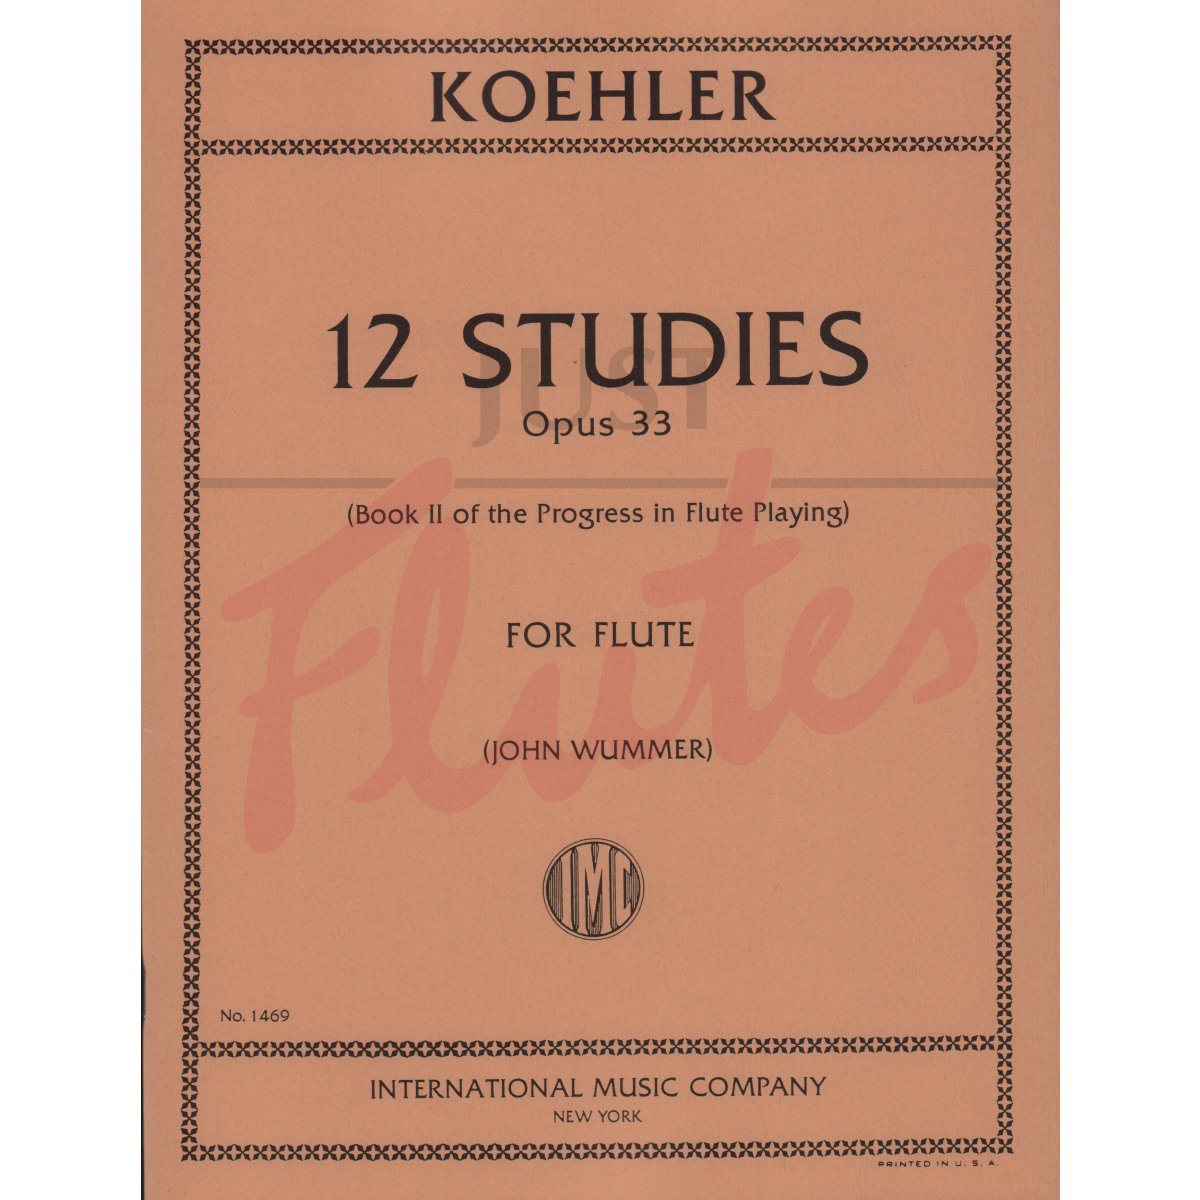 12 Studies for Flute